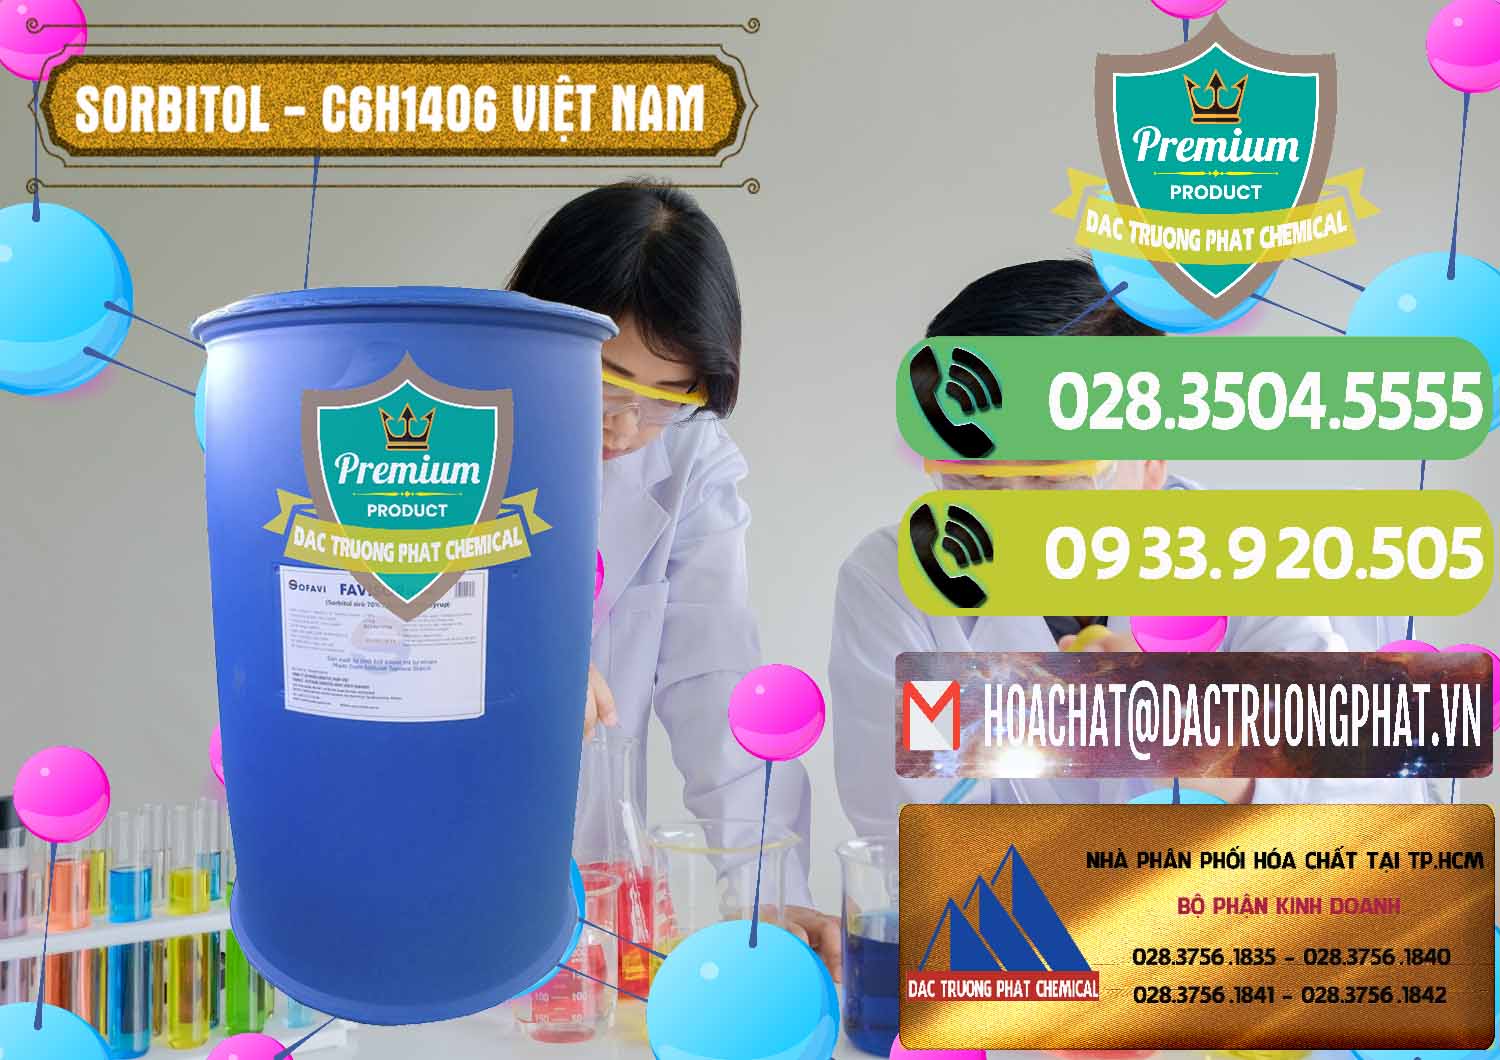 Nhà cung cấp - bán Sorbitol - C6H14O6 Lỏng 70% Food Grade Việt Nam - 0438 - Phân phối & cung ứng hóa chất tại TP.HCM - hoachatmientay.vn